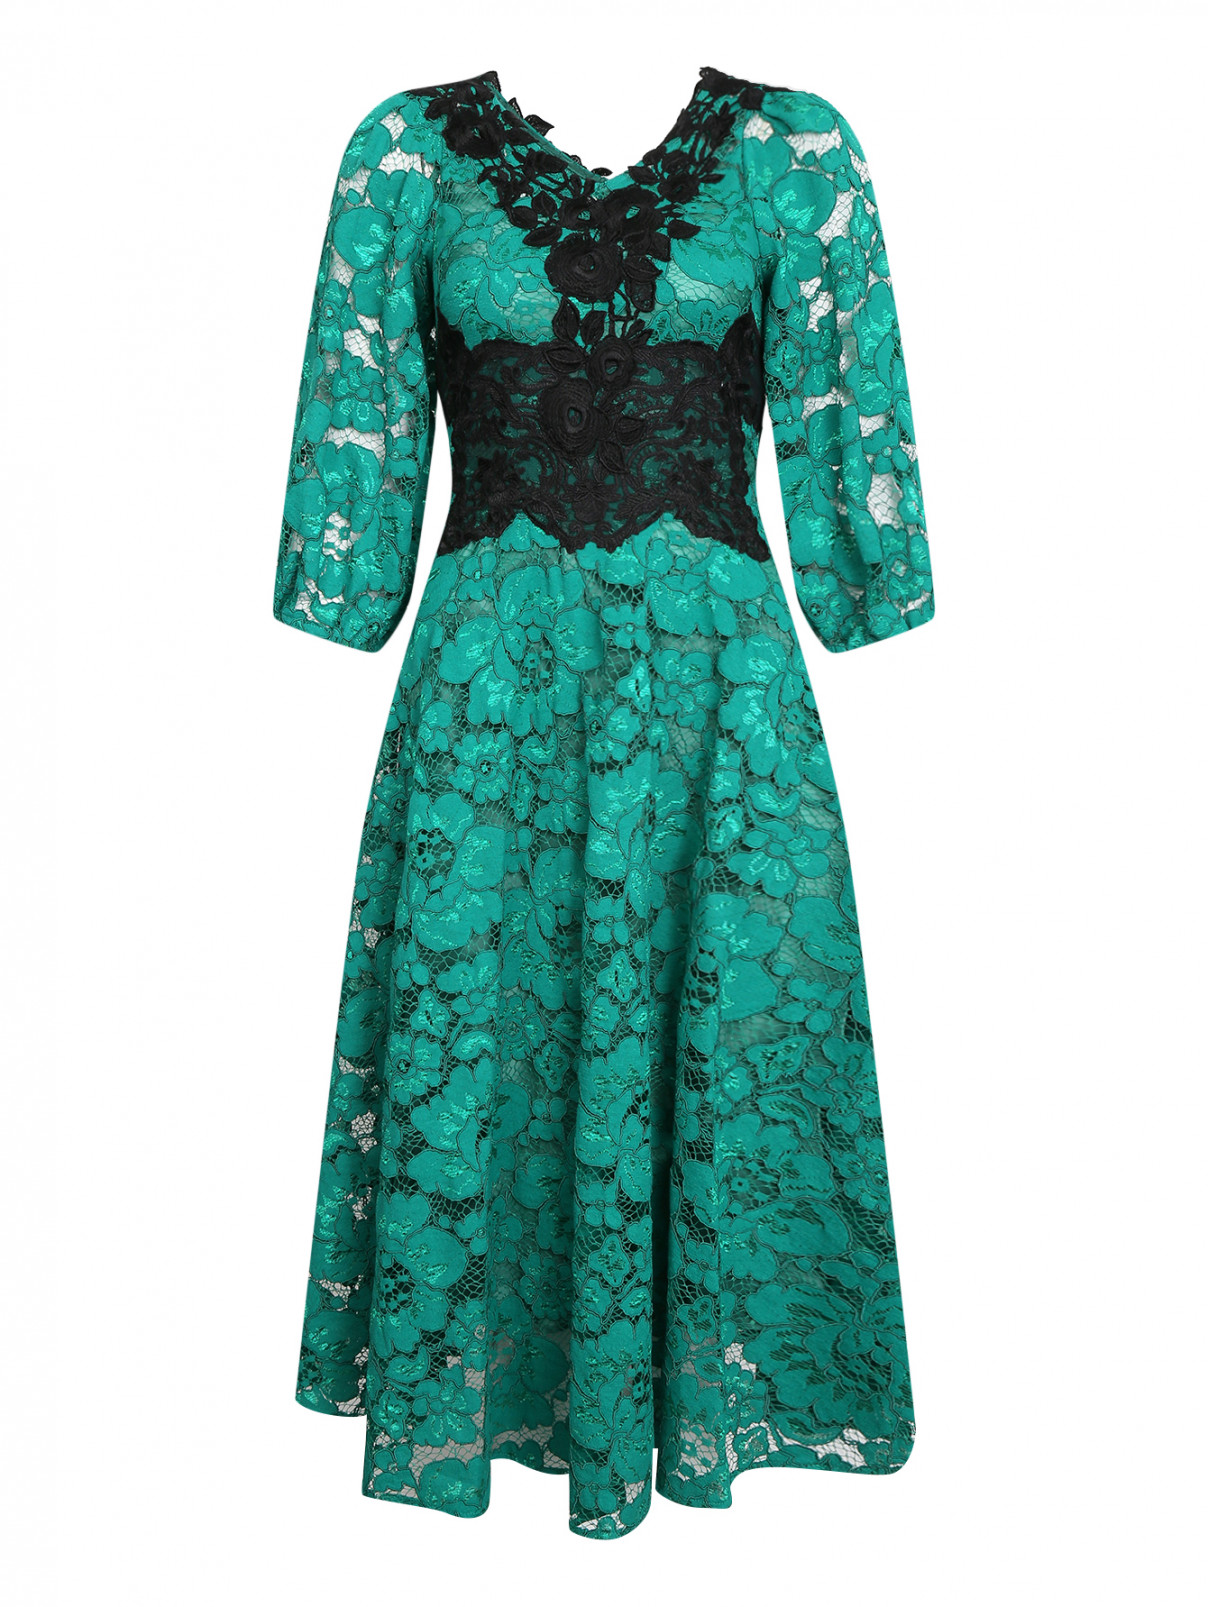 Платье из кружева с контрастной апликацией Antonio Marras  –  Общий вид  – Цвет:  Зеленый